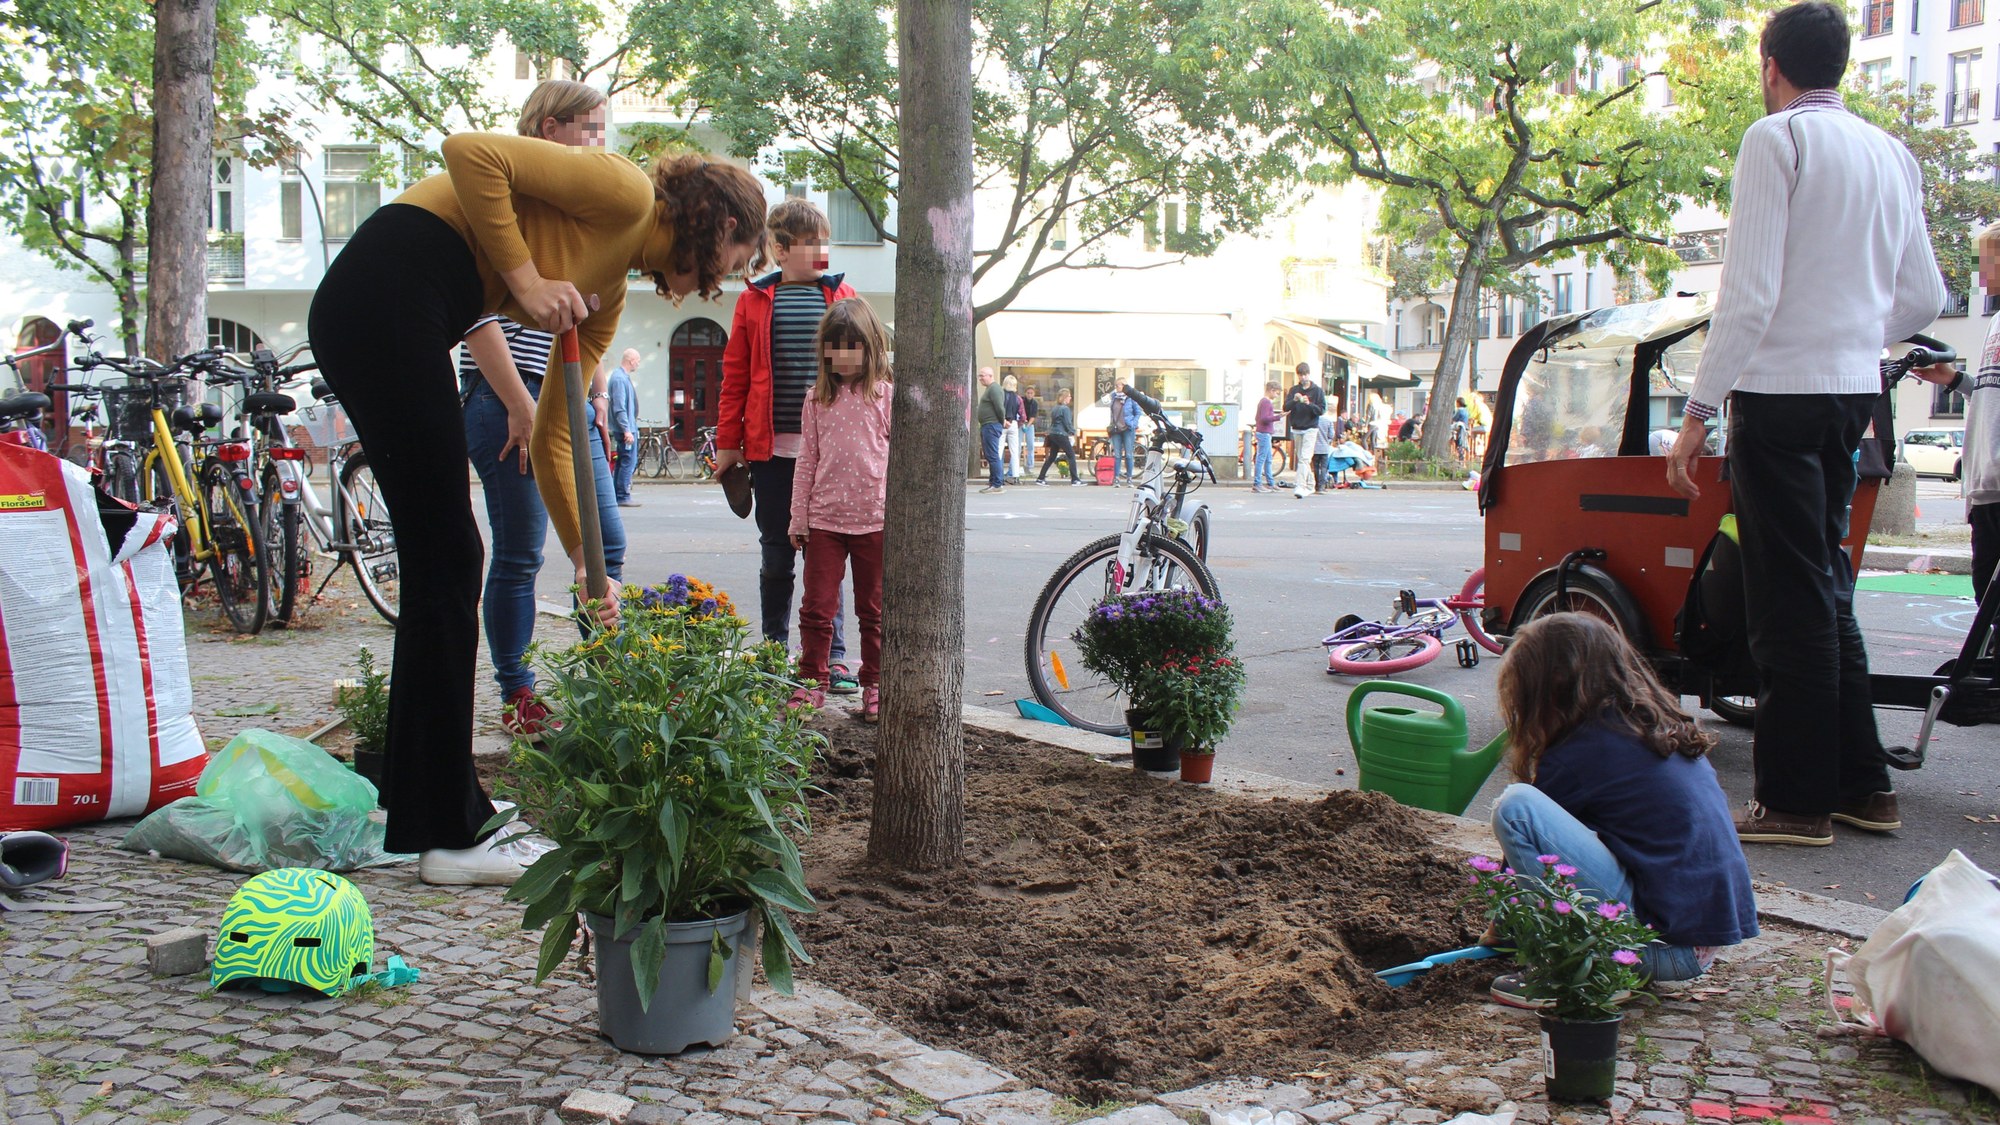 Zu sehen ist eine Gruppe von Kindern und Erwachsenen, welche gemeinsam eine Baumscheibe am Straßenrand eines verkehrsfreien Bereiches aufgraben, um ihn anschließend zu begrünen.